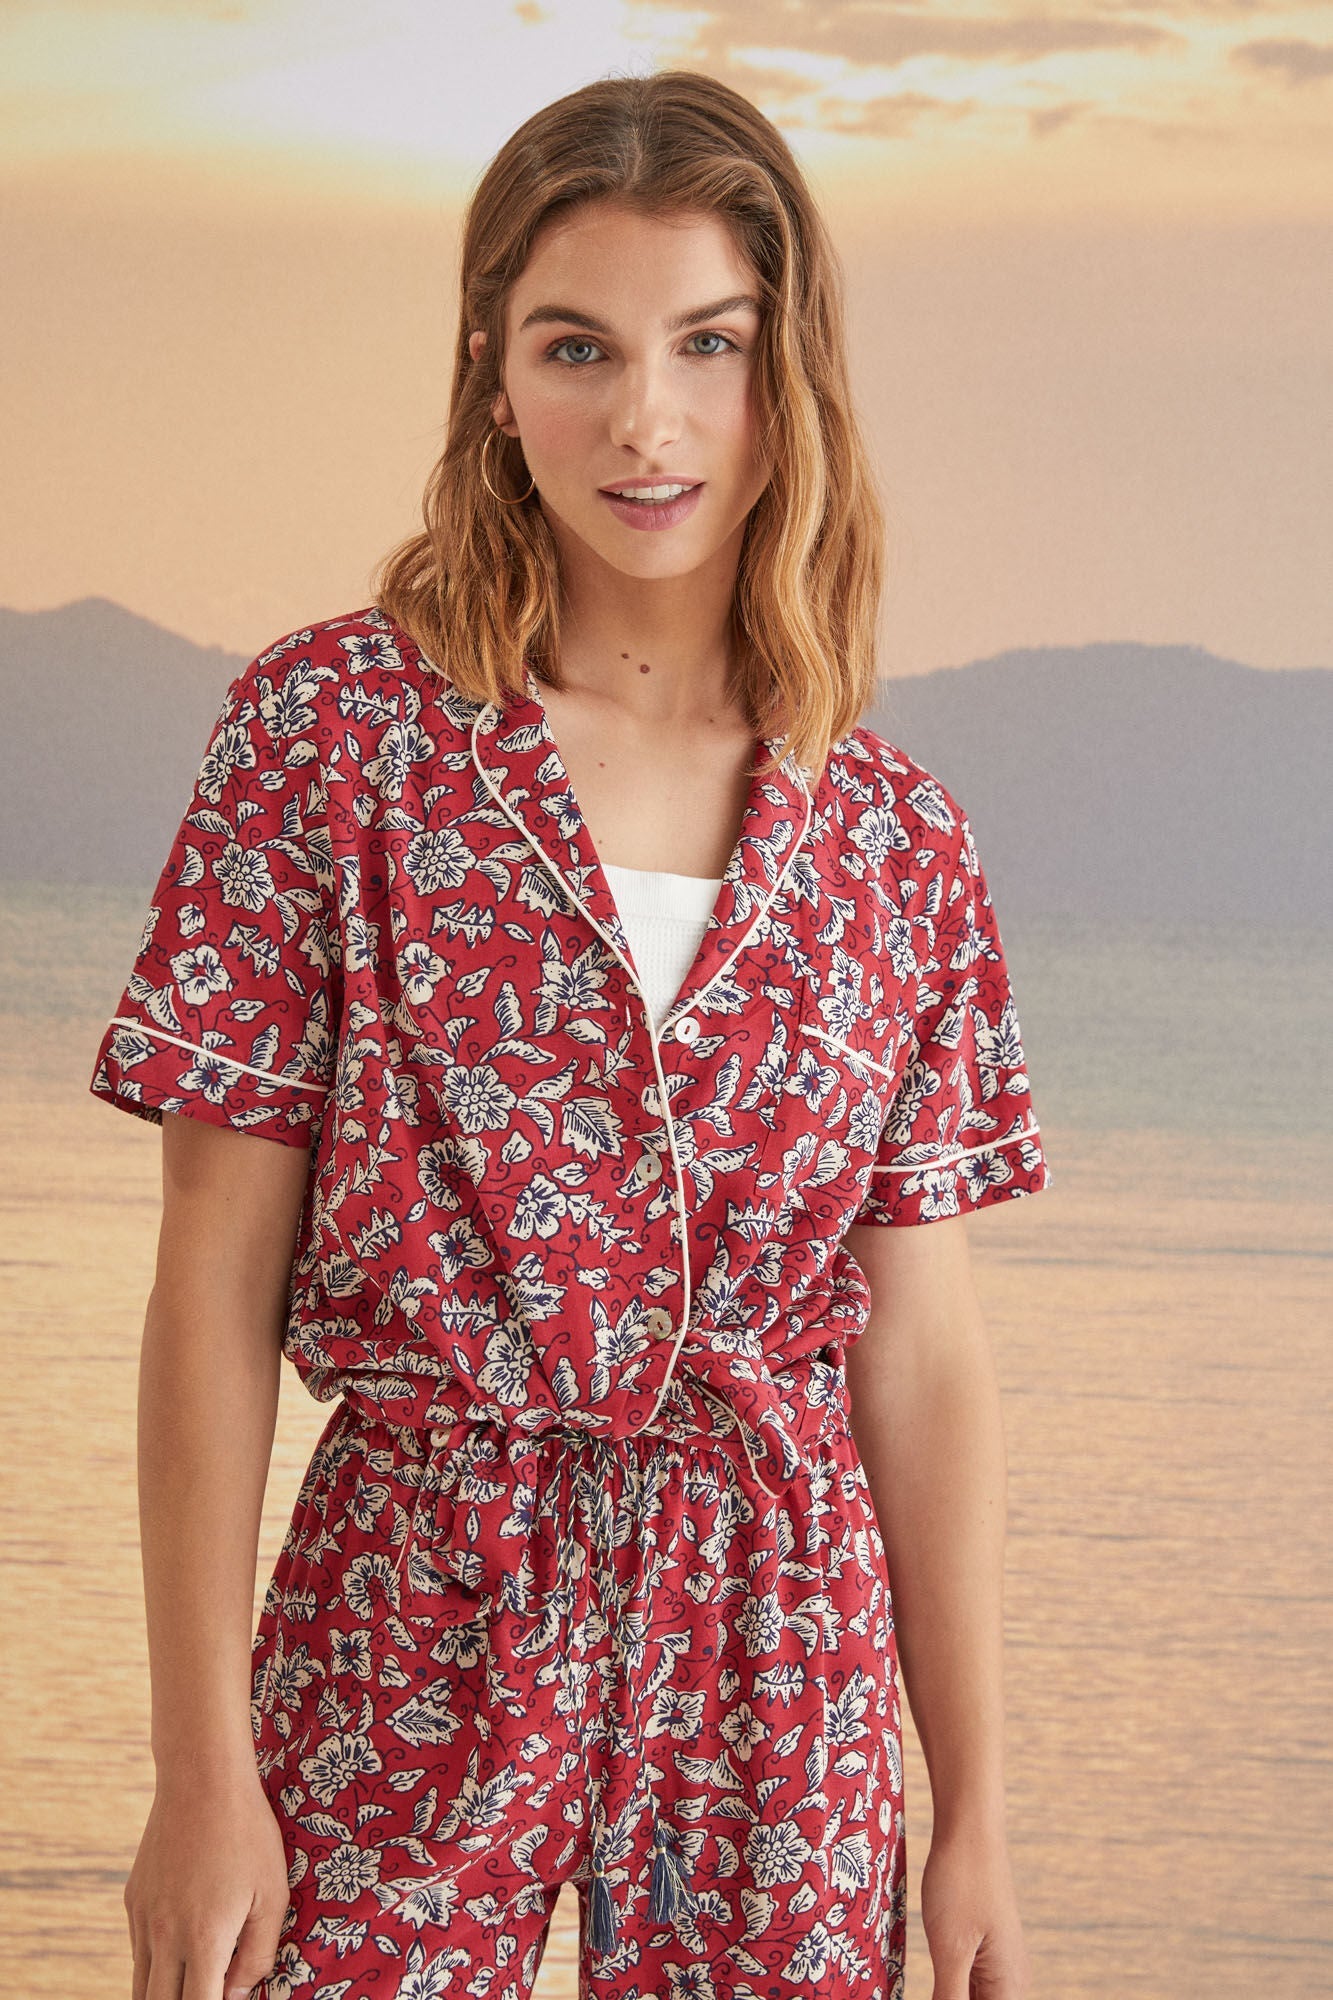 Printed Capri shirt pyjamas